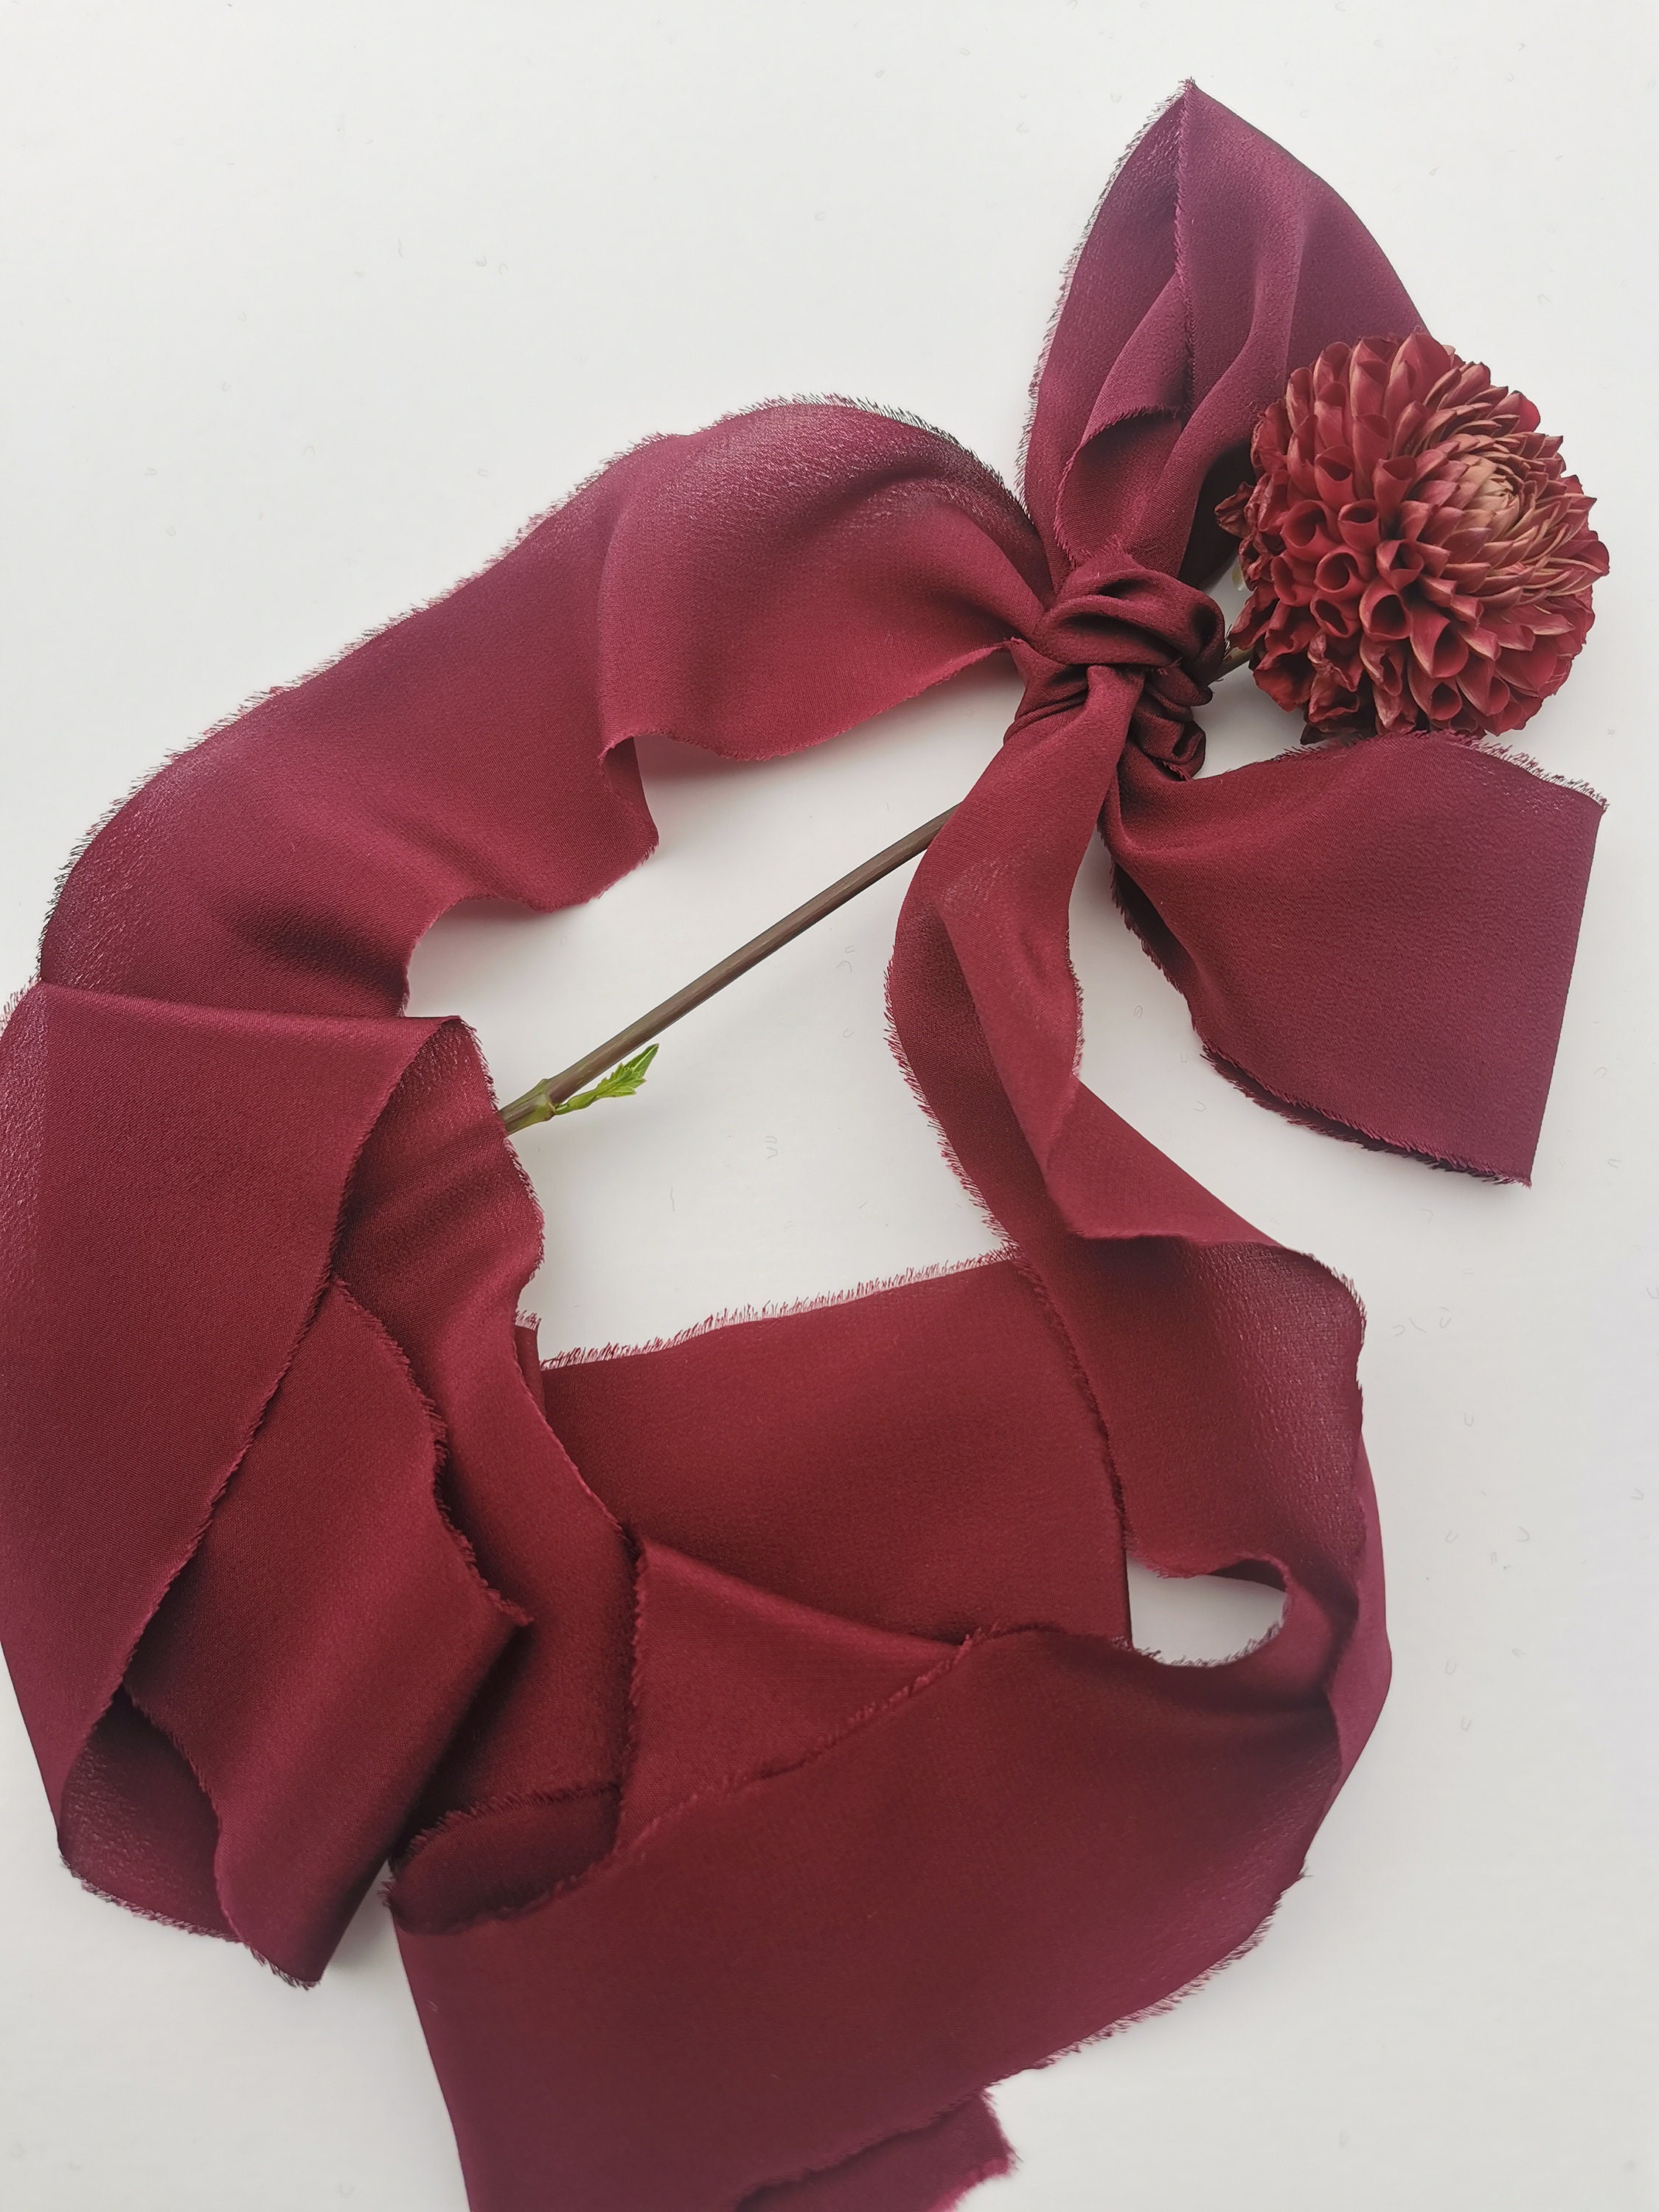 Merlot - Dual Texture Silk Ribbon